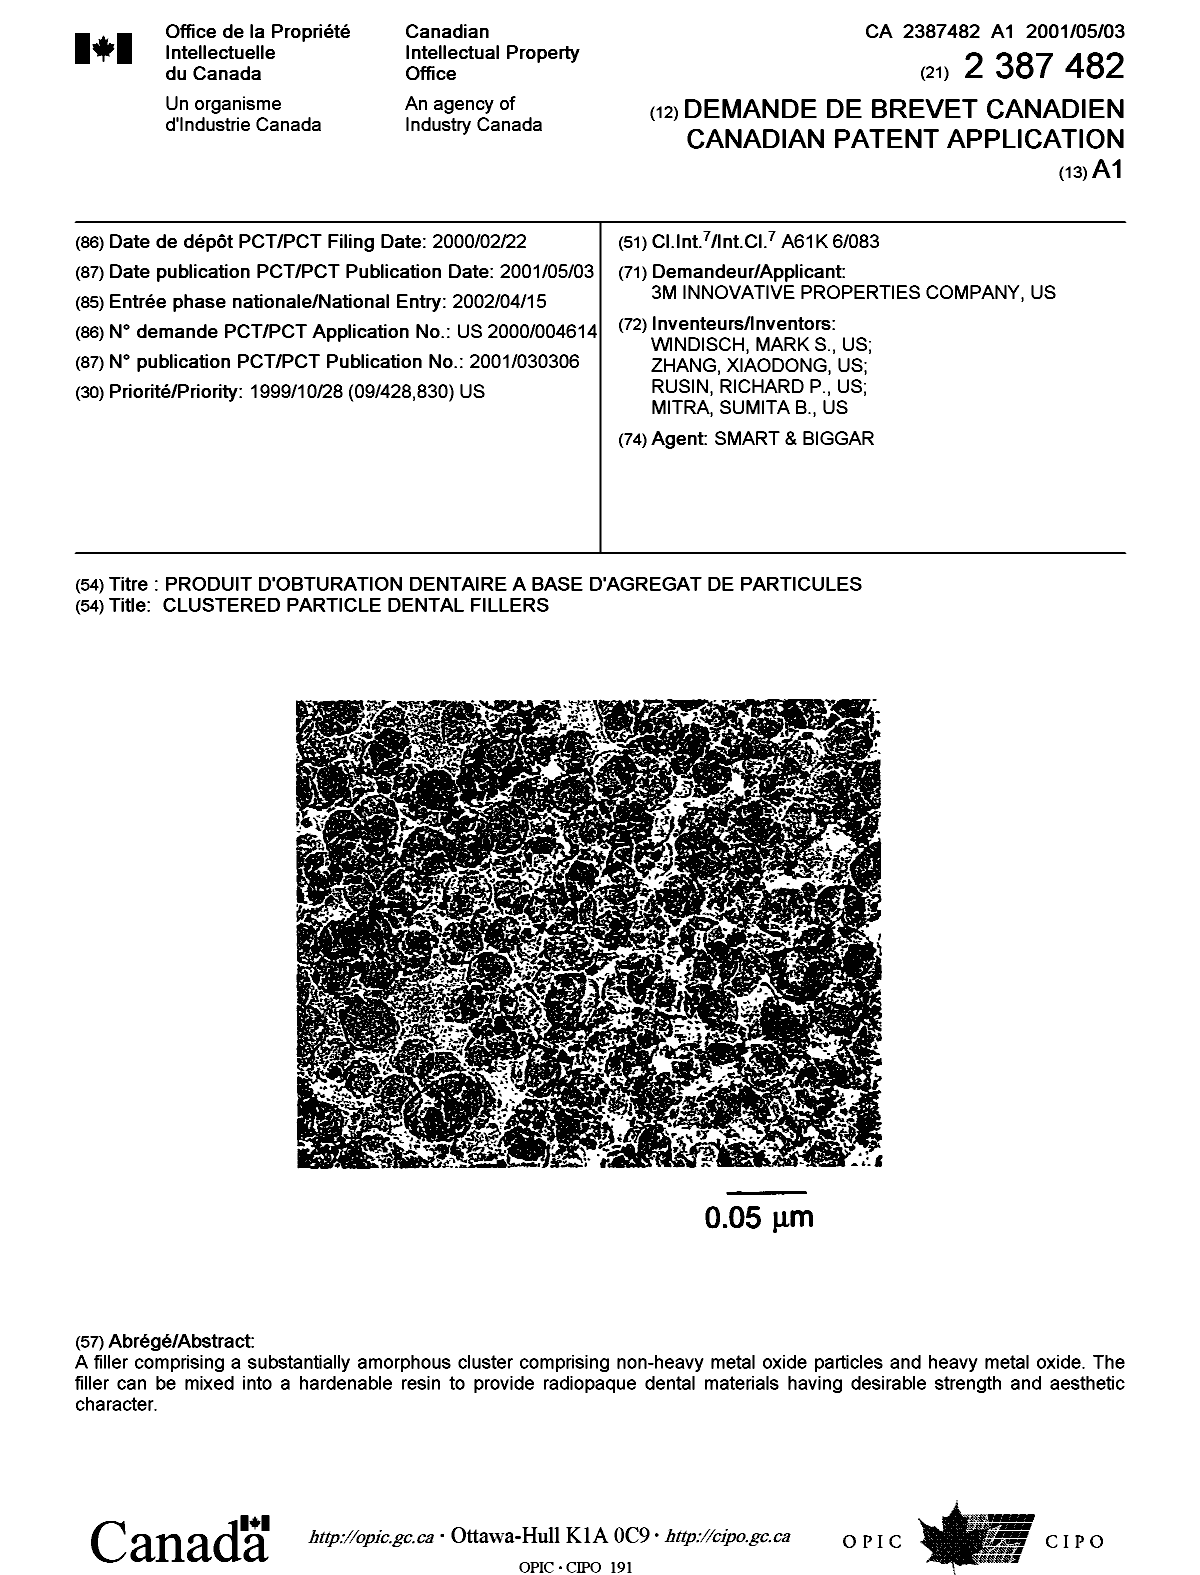 Document de brevet canadien 2387482. Page couverture 20021003. Image 1 de 1